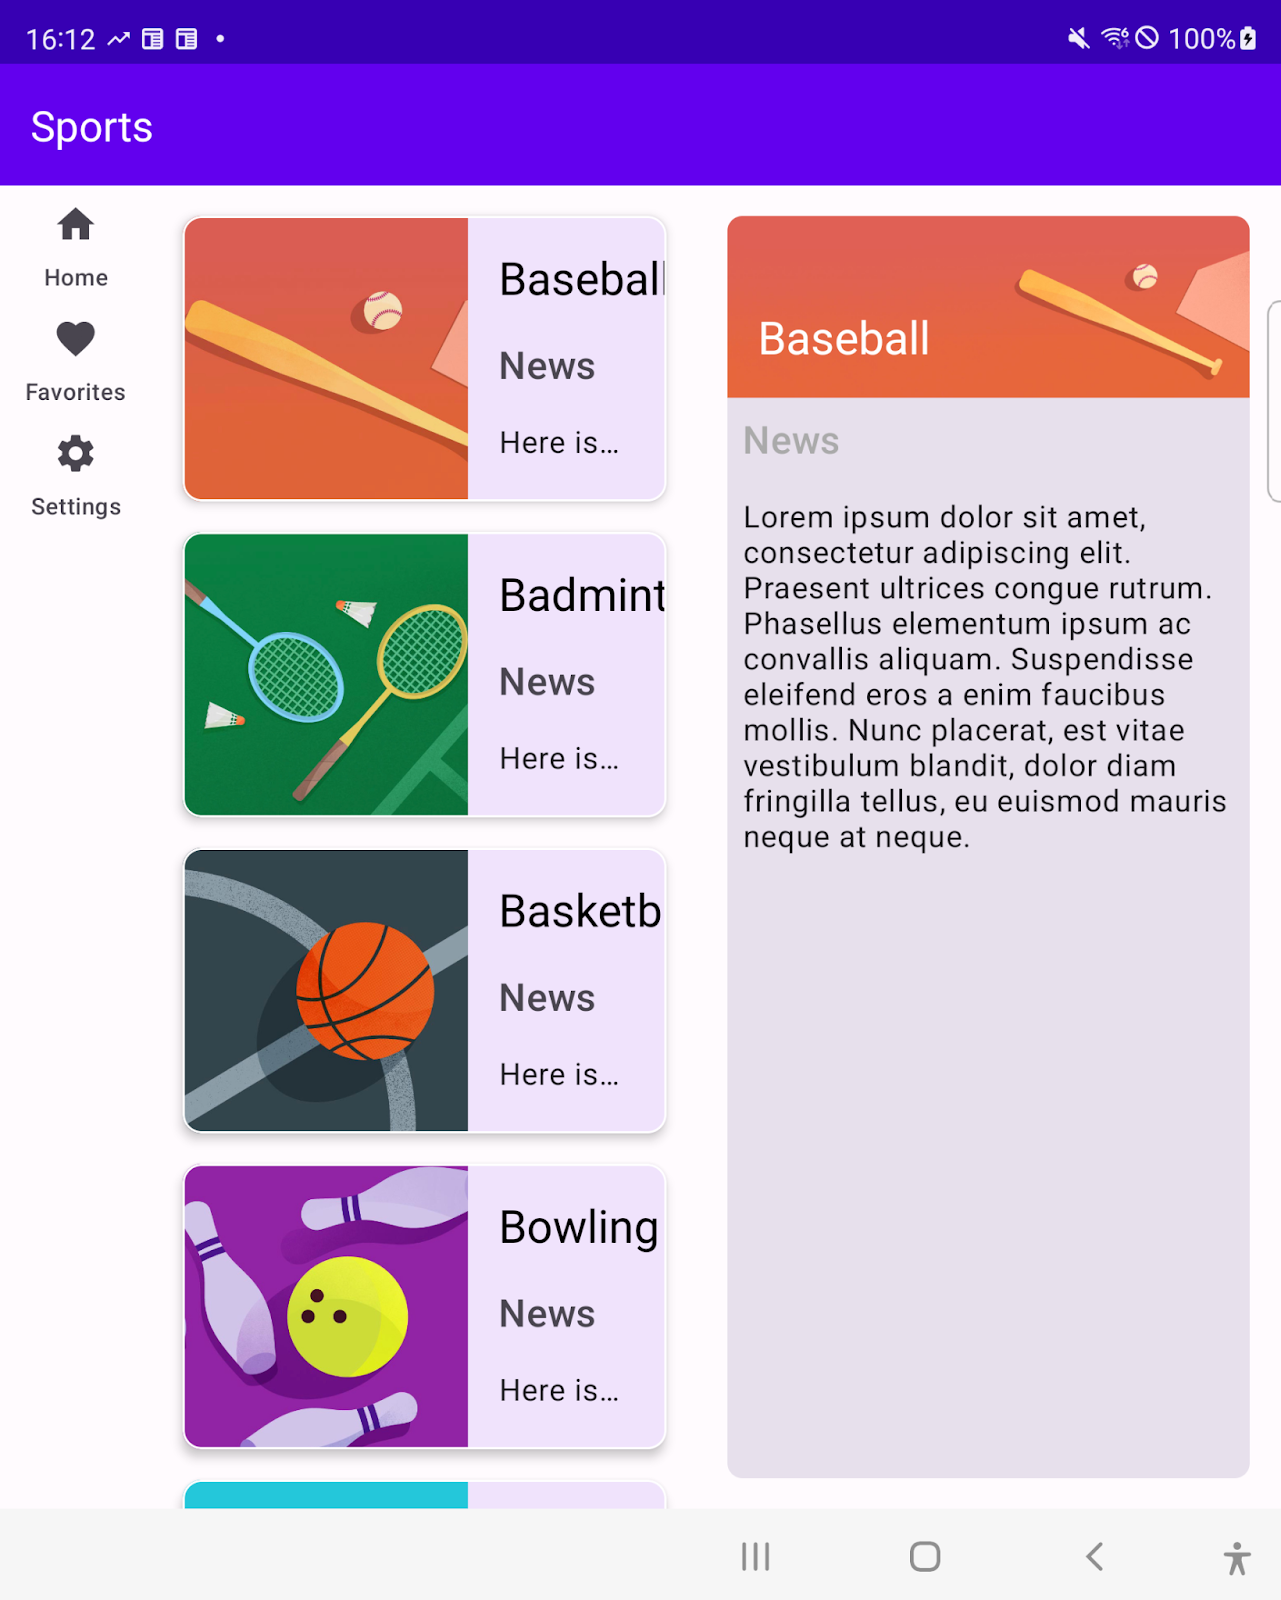 La app de Deportes muestra una lista de deportes y de noticias deportivas una al lado de la otra en una ventana mediana. Un riel de navegación se muestra como un componente de navegación superior. 